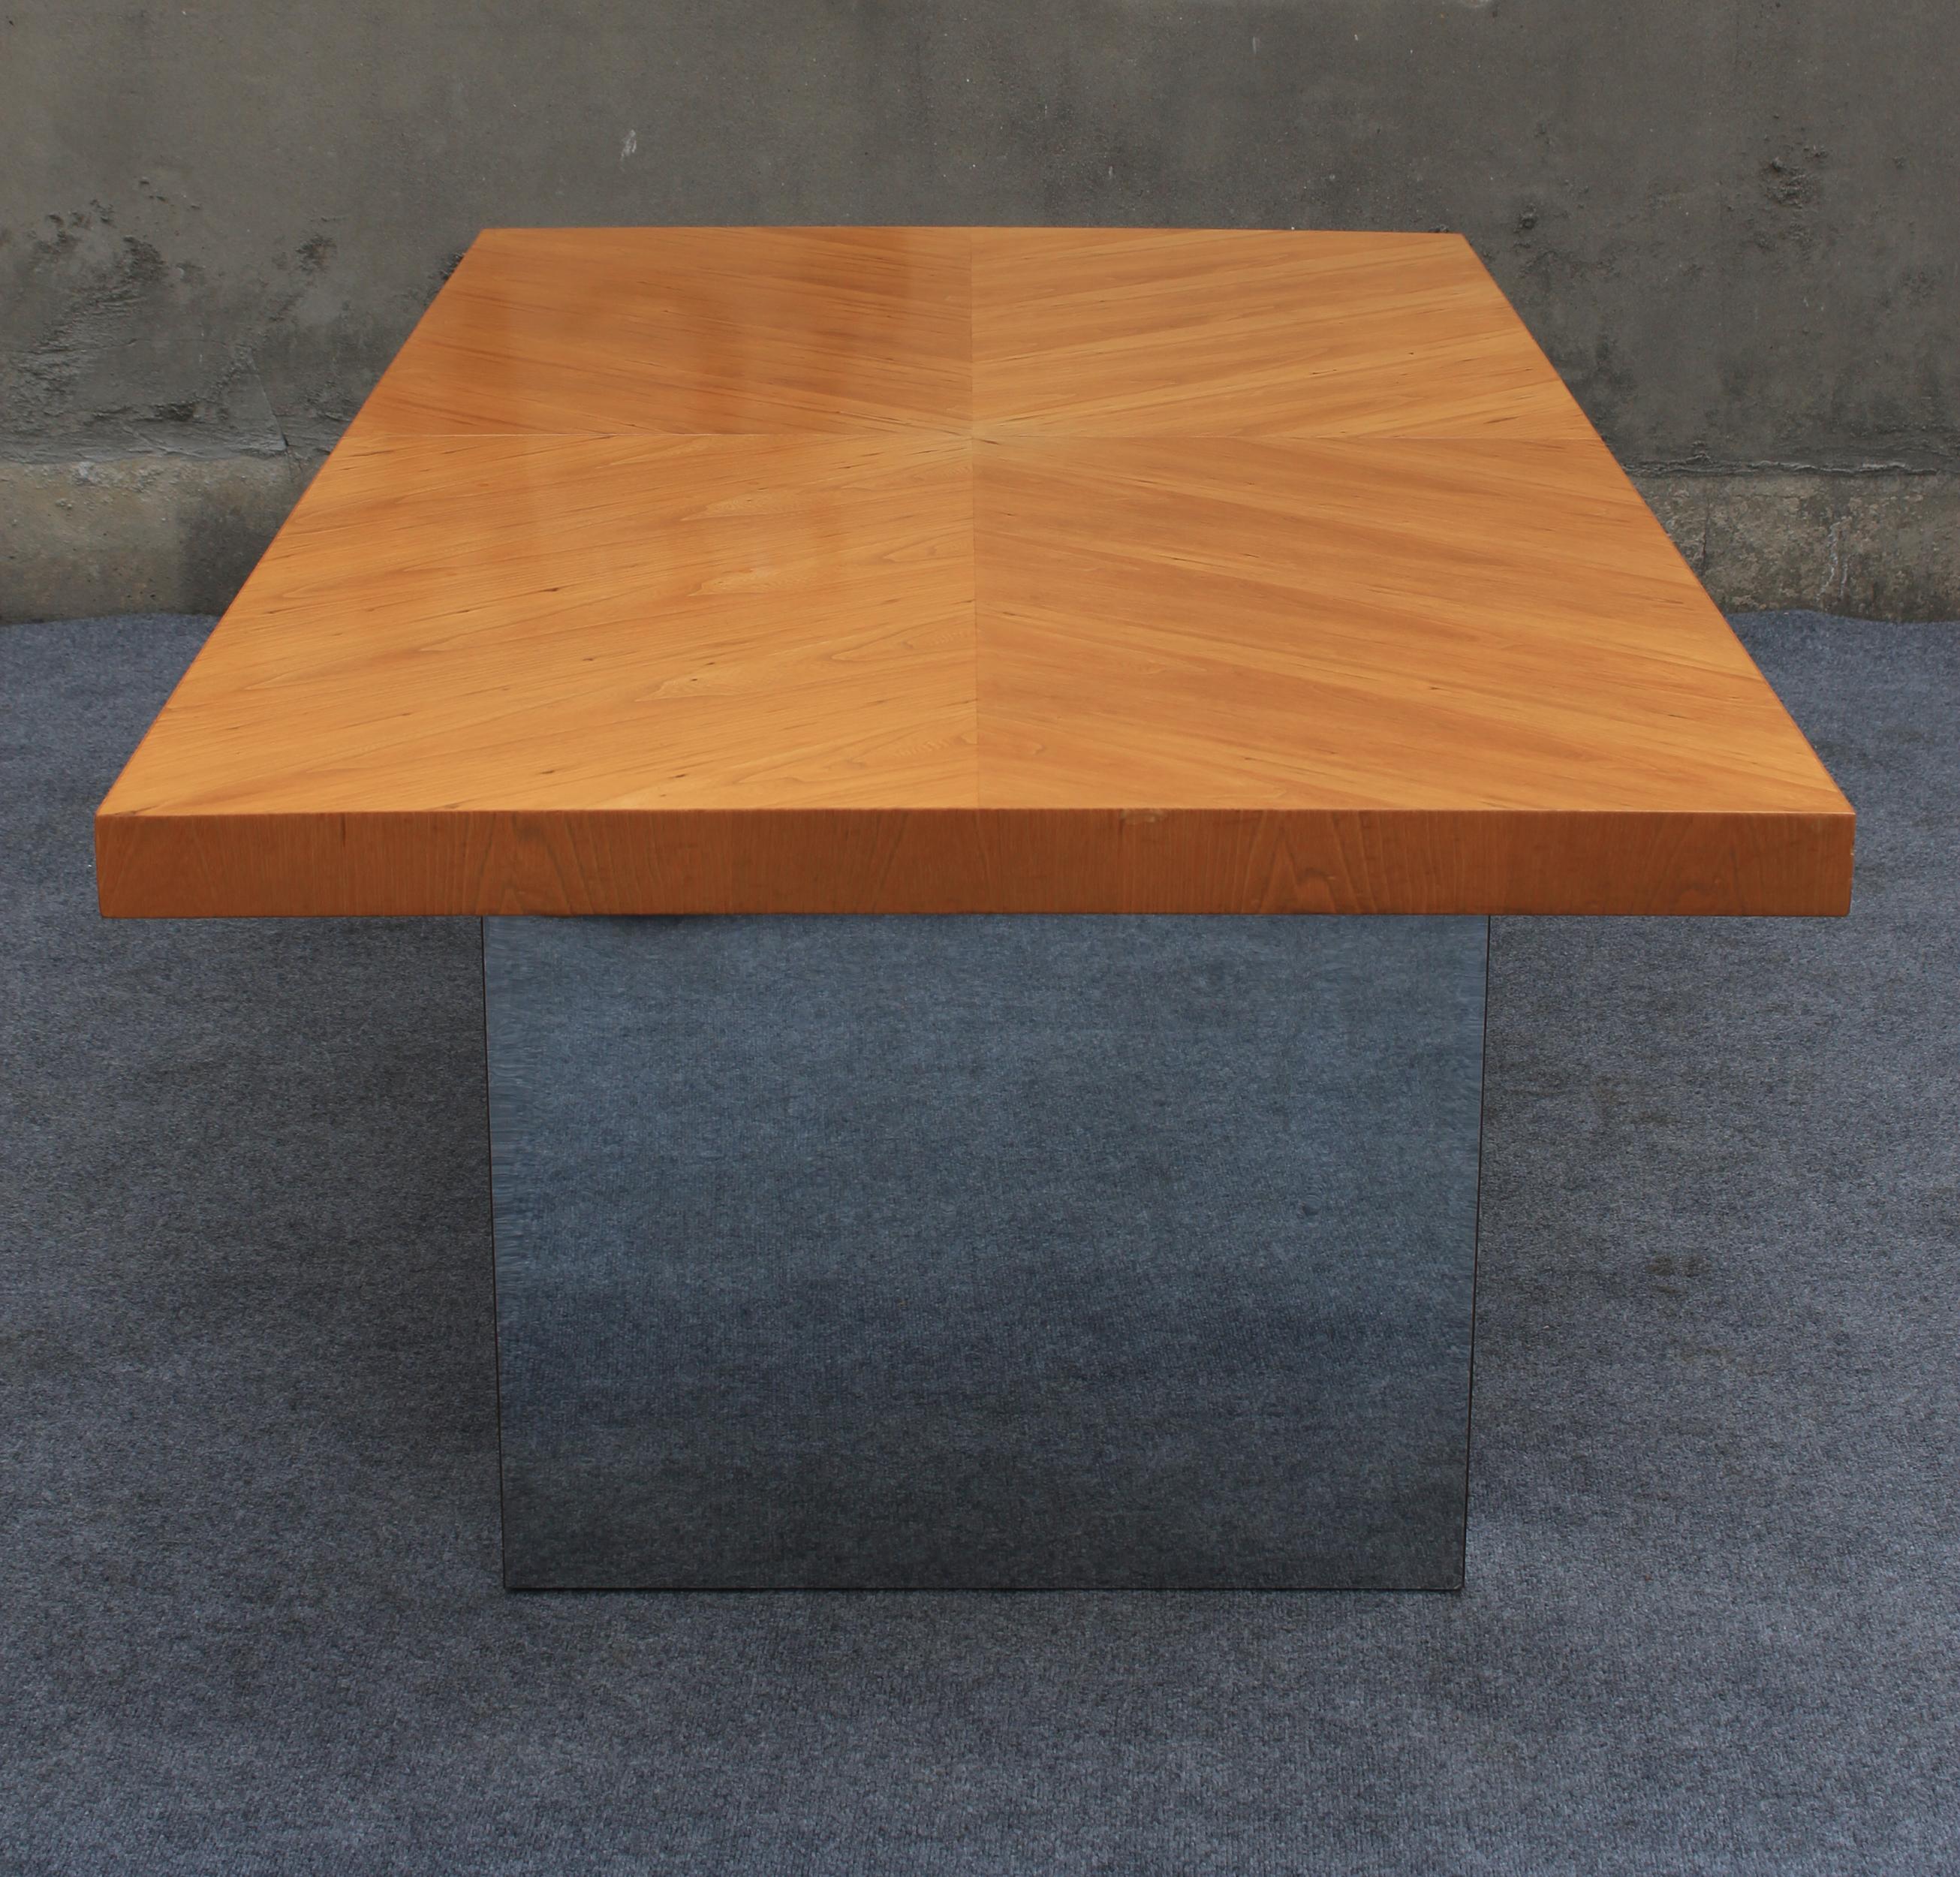 Dieser Tisch wurde in den späten 1960er Jahren von Milo Baughman entworfen und von Thayer Coggin hergestellt. Seitdem wurde dieses Design kopiert und Tausende von zeitgenössischen Versionen wurden produziert. Dies ist dem weit verbreiteten Ruhm von